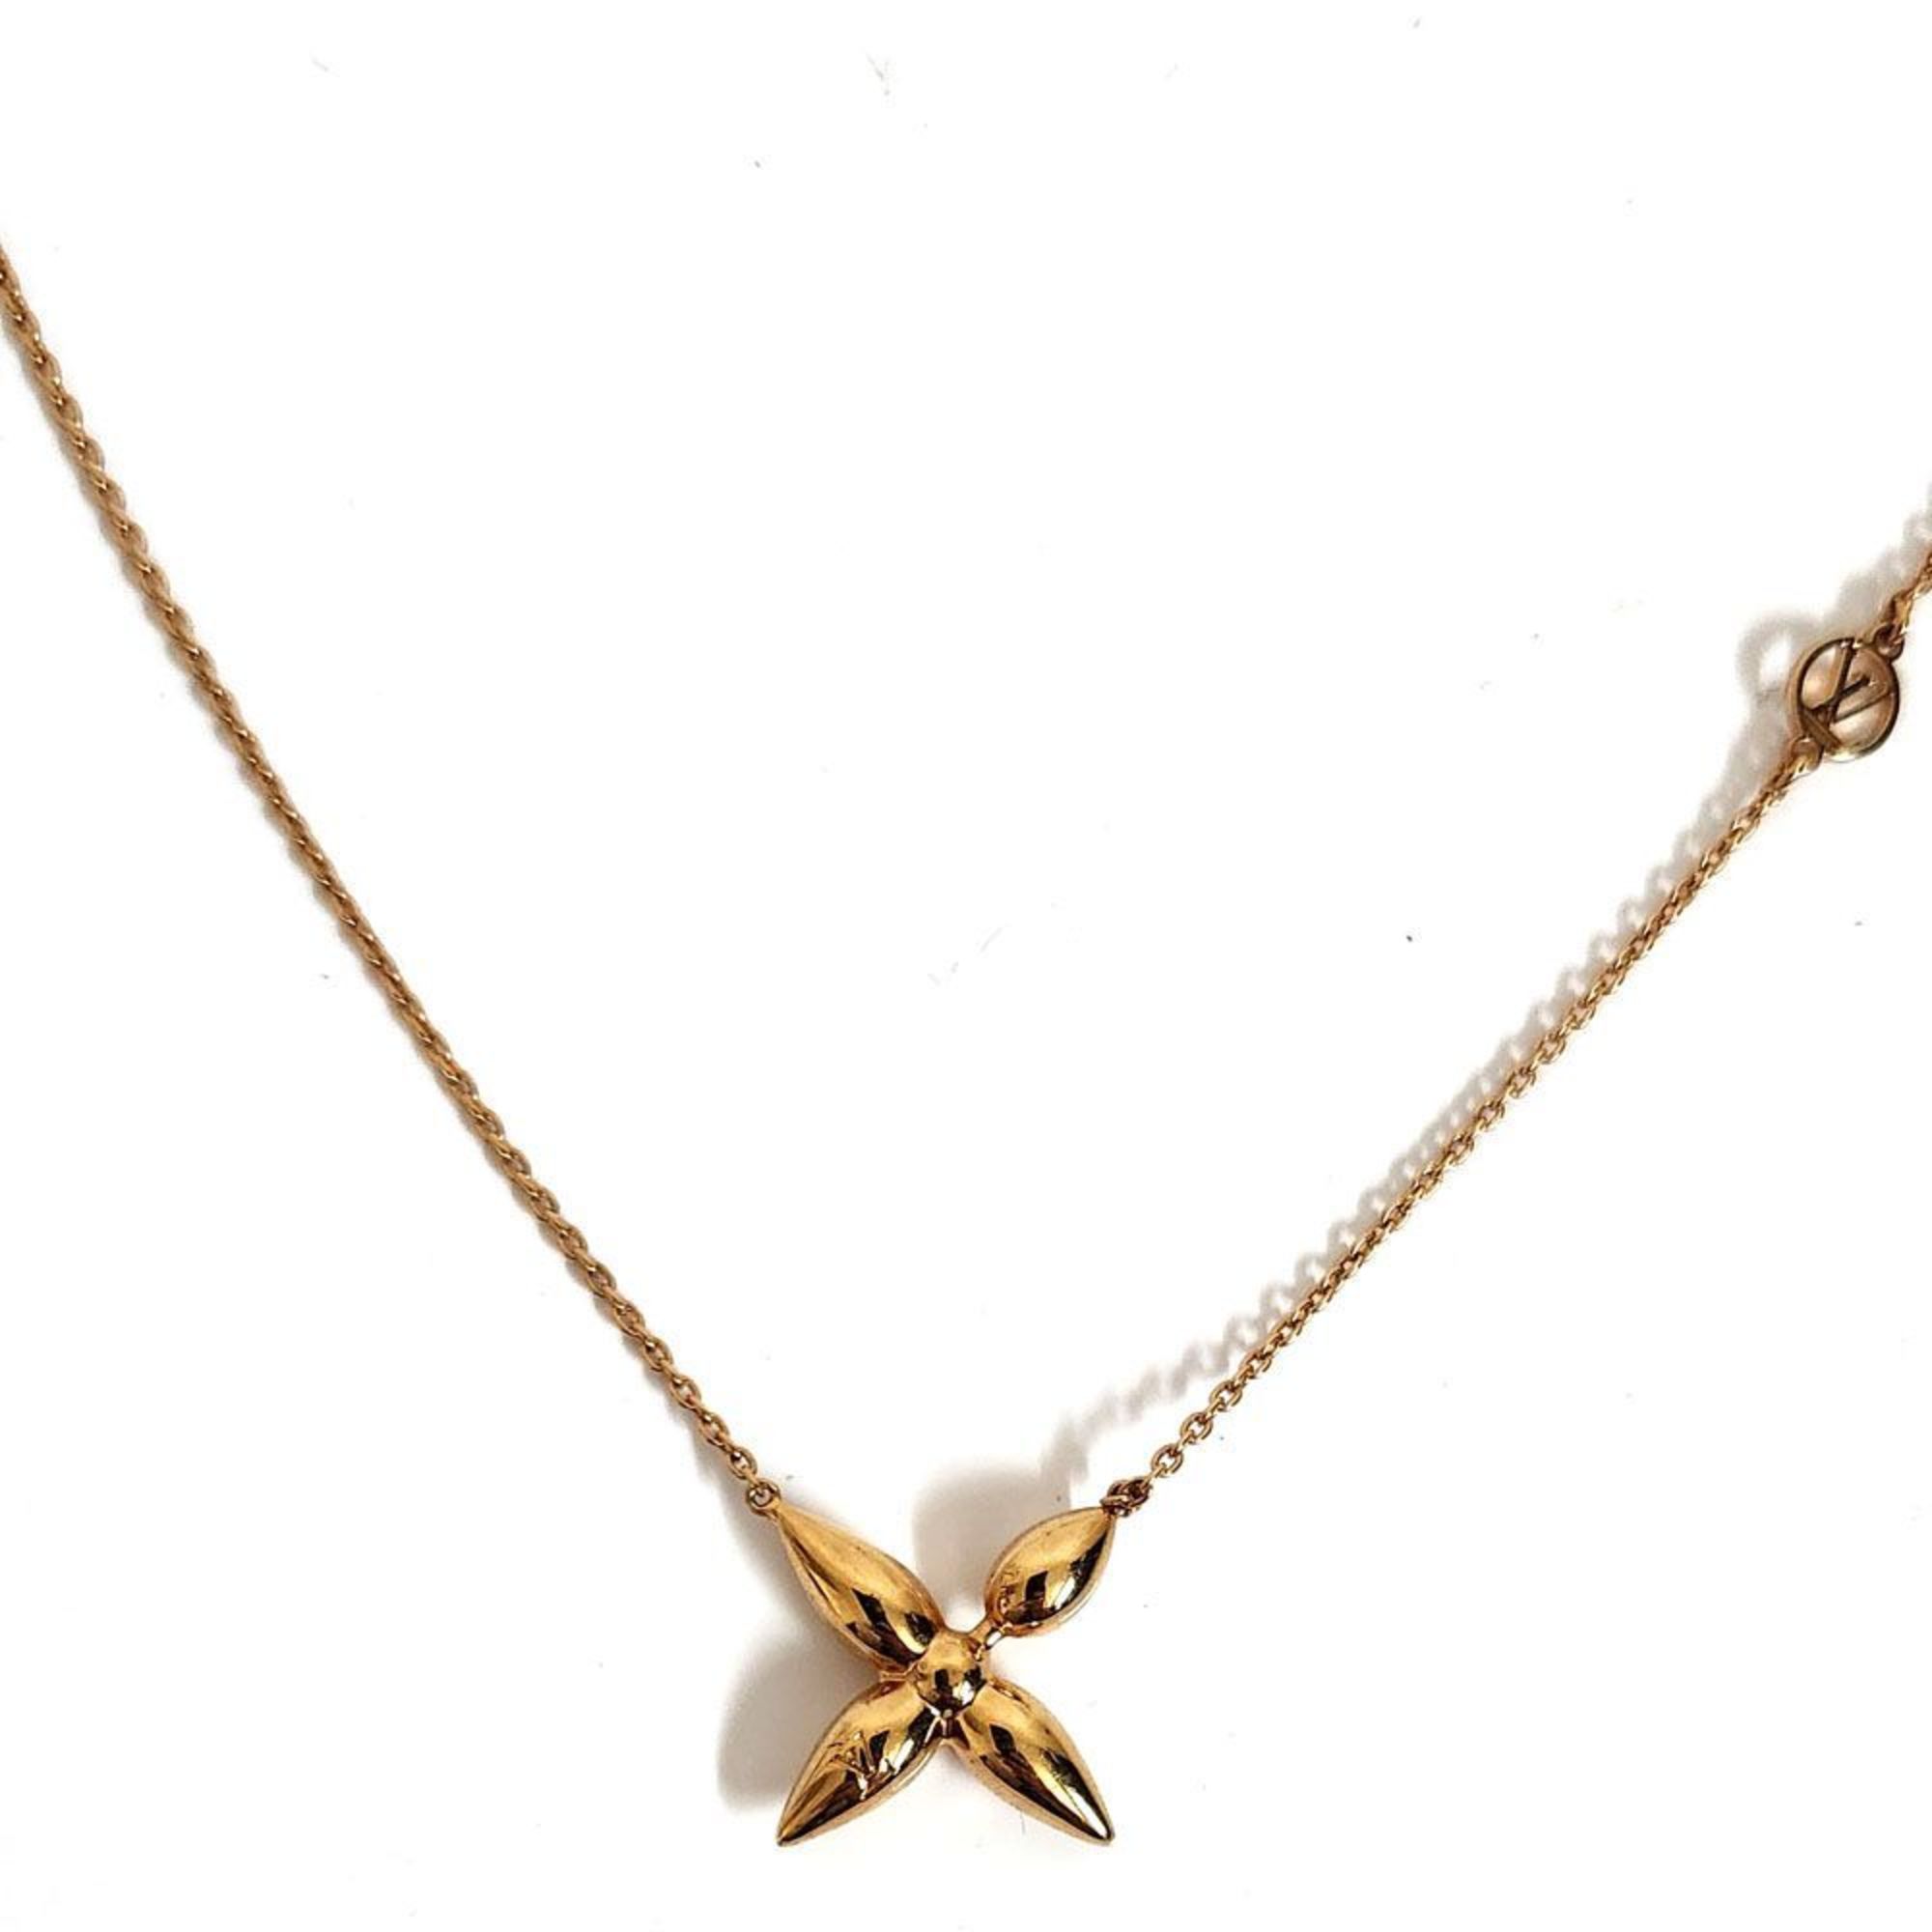 Louis Vuitton LOUISVUITTON Necklace Collier Louisette M00365 Pendant Women's Gold Metal